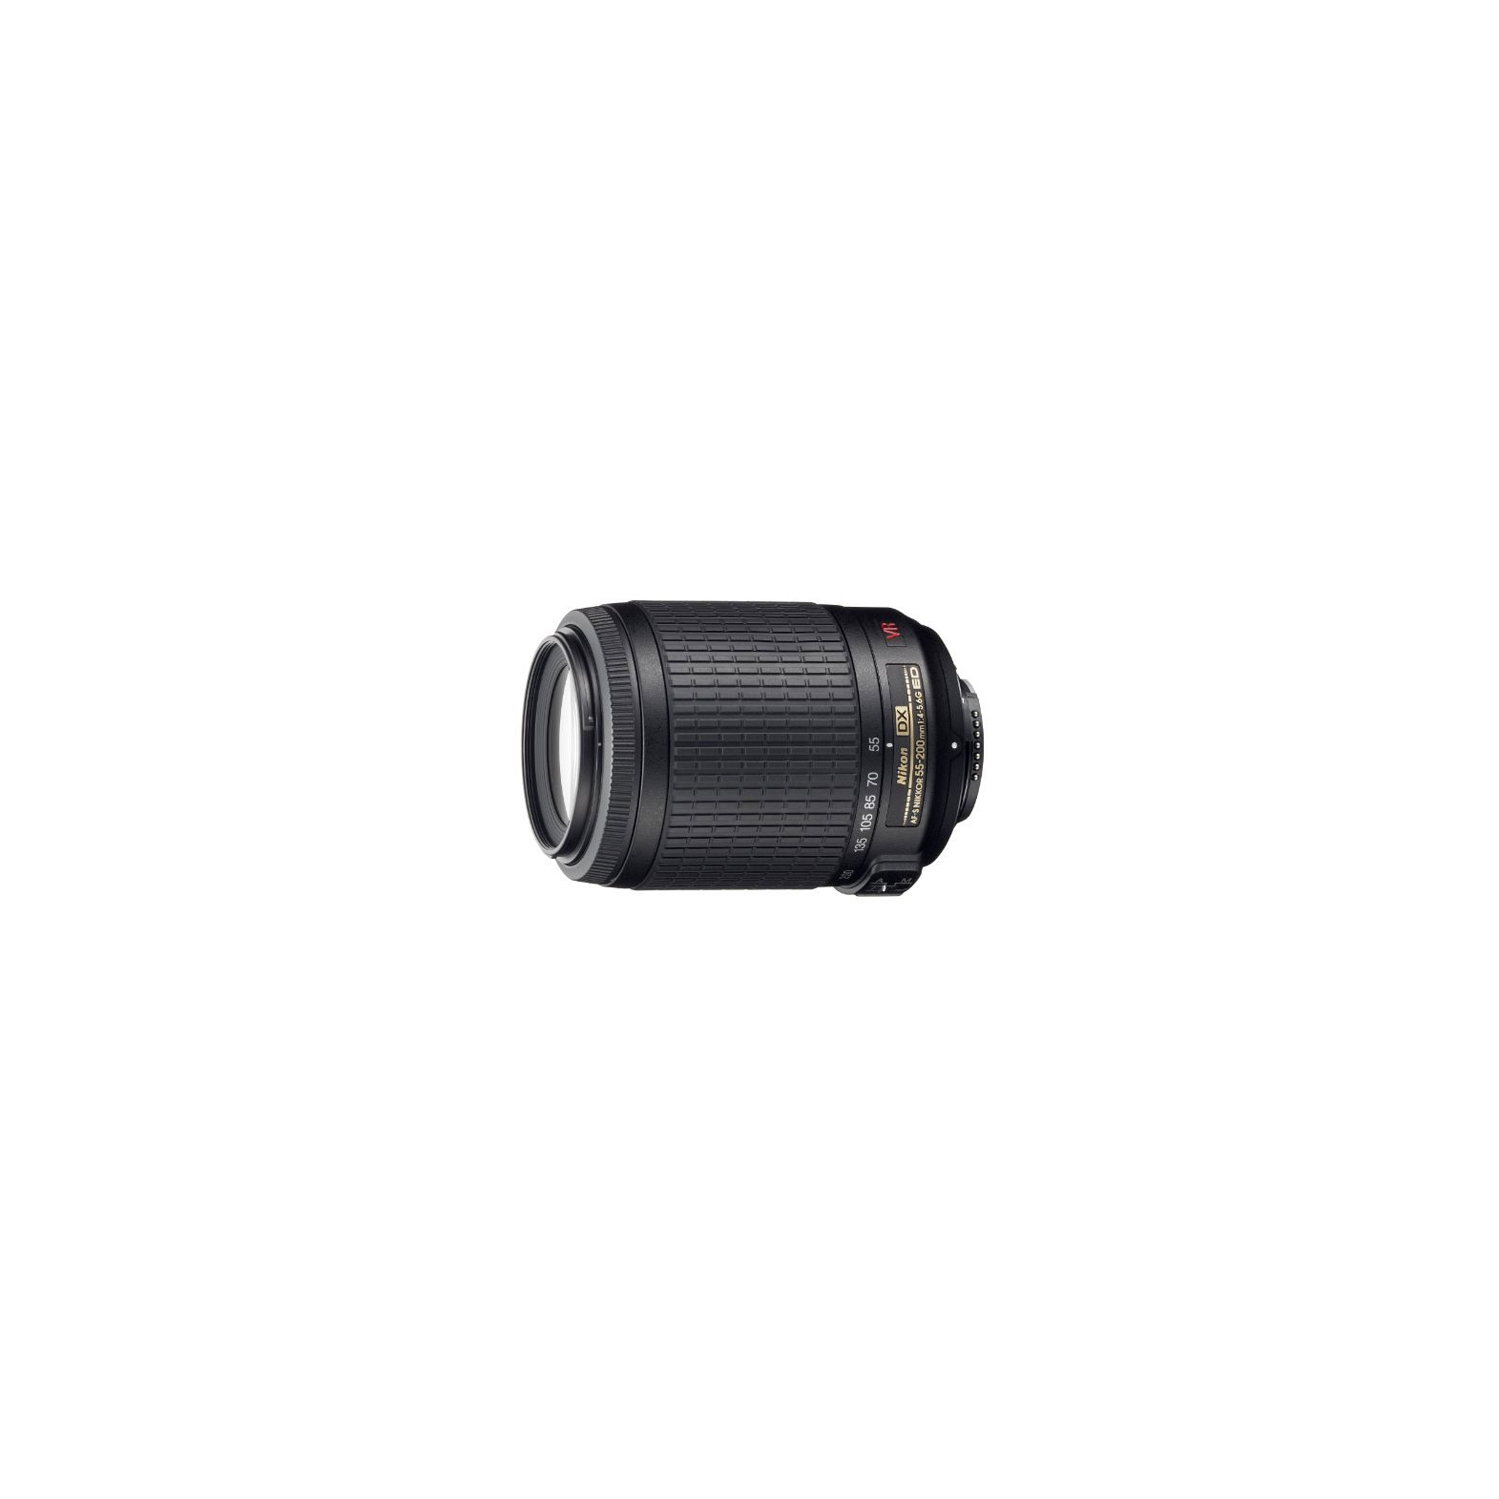 Nikon AF-S DX VR Zoom-NIKKOR 55-200mm f/4-5.6G IF-ED Lens | Best